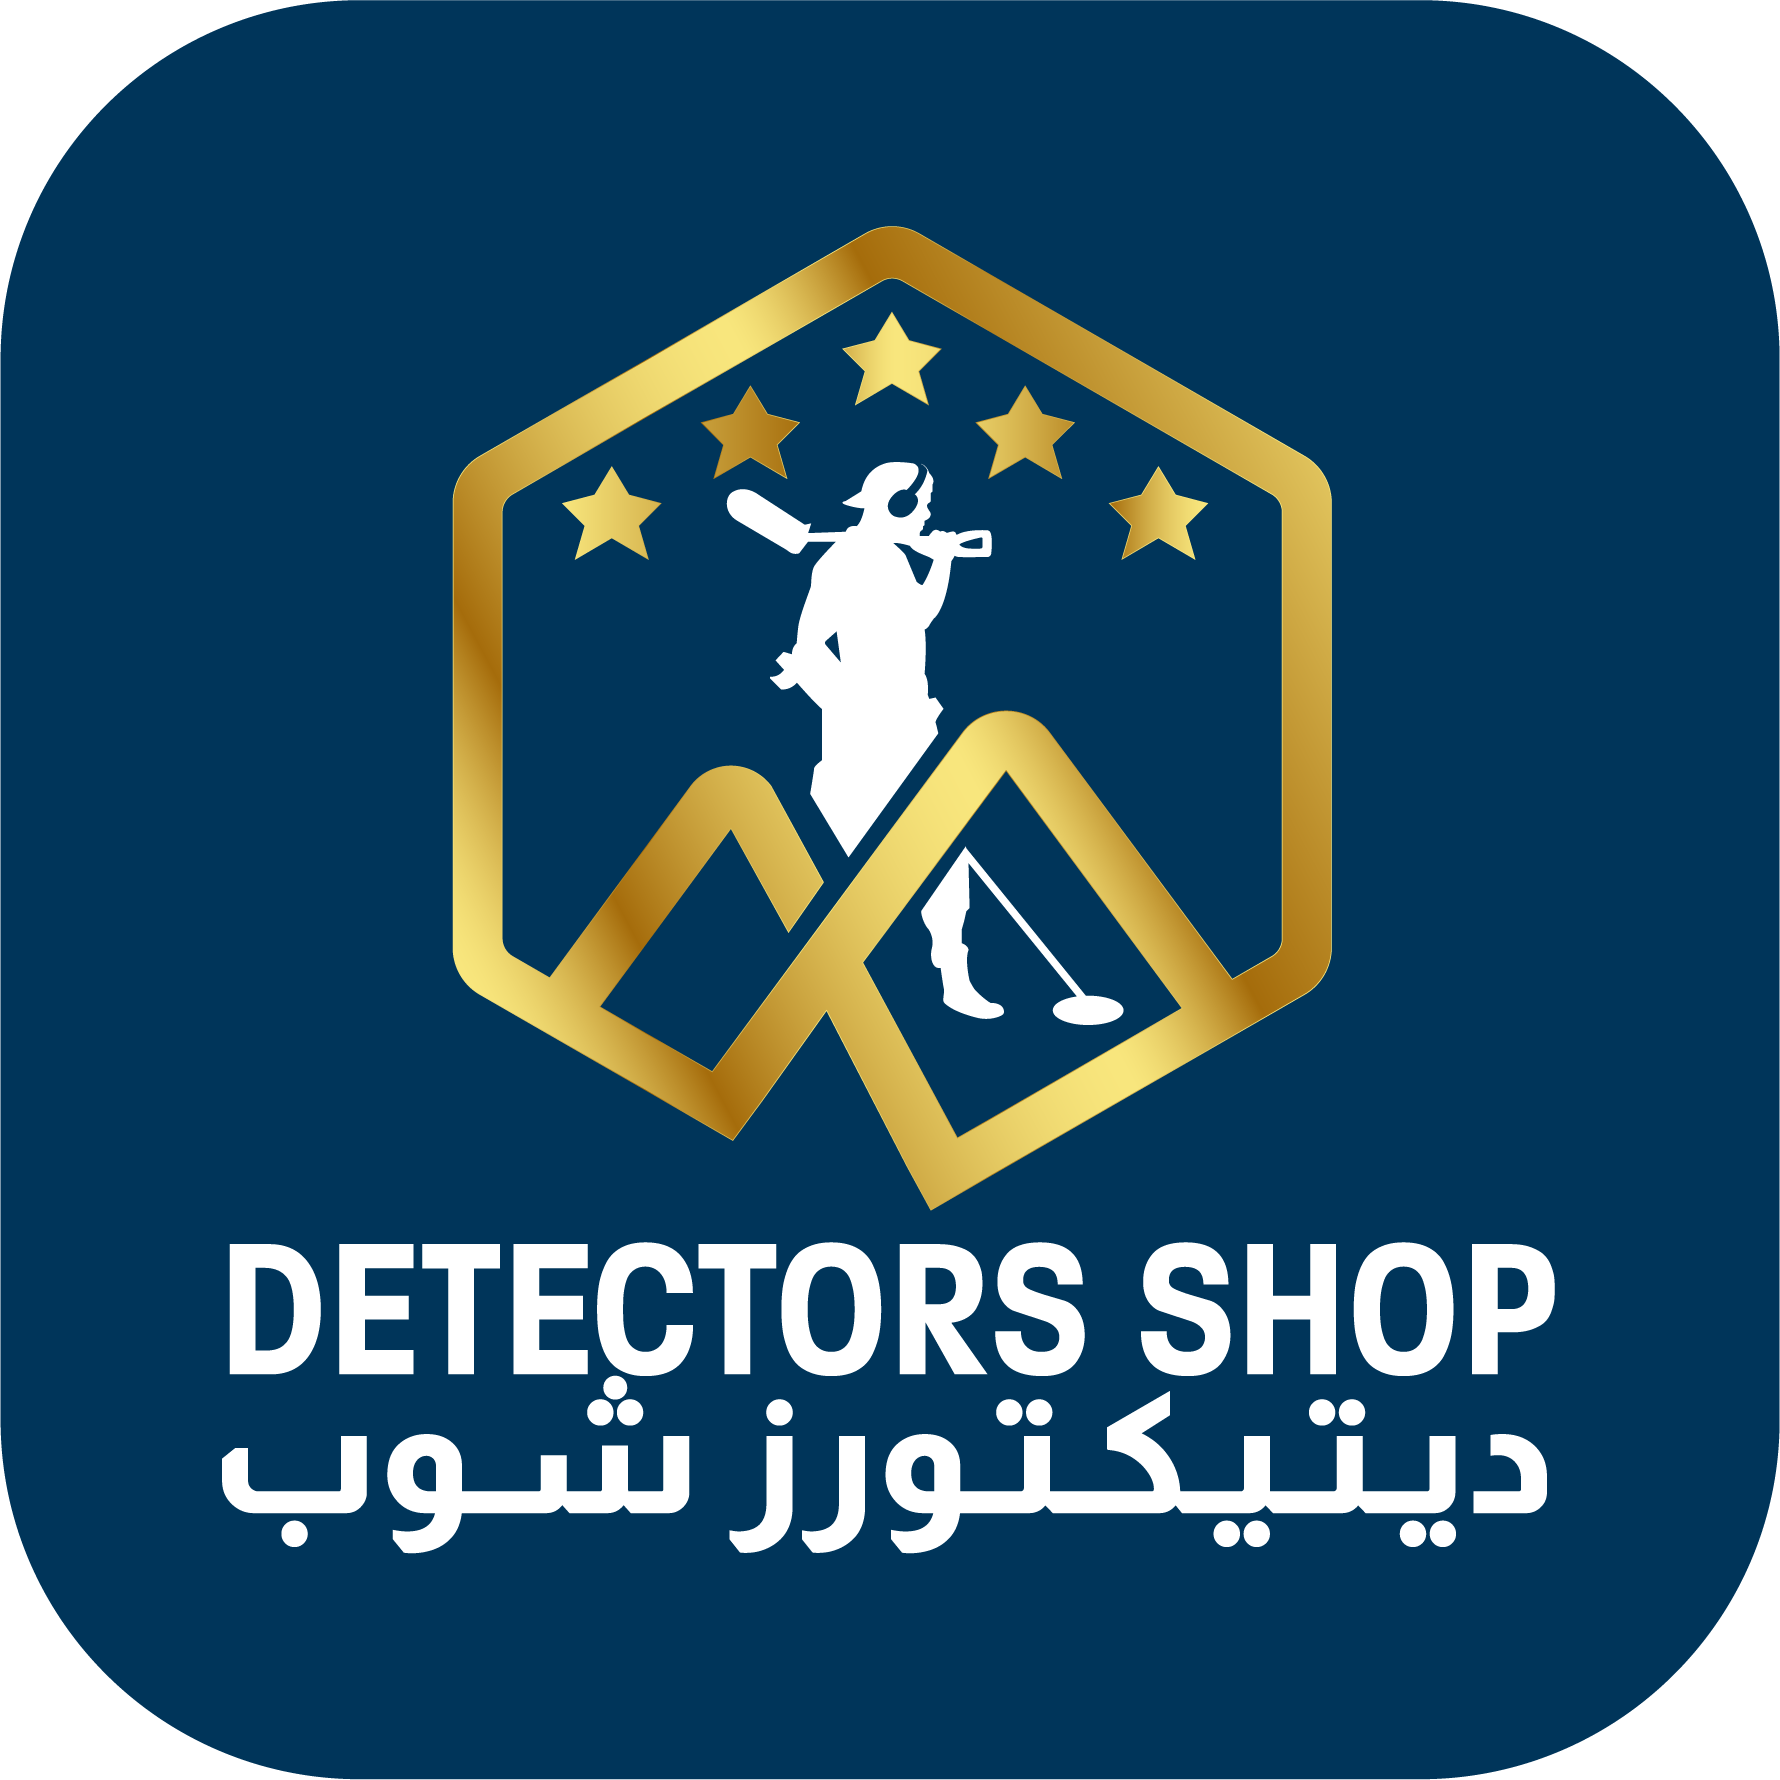 Detectors Shop General Trading Logo